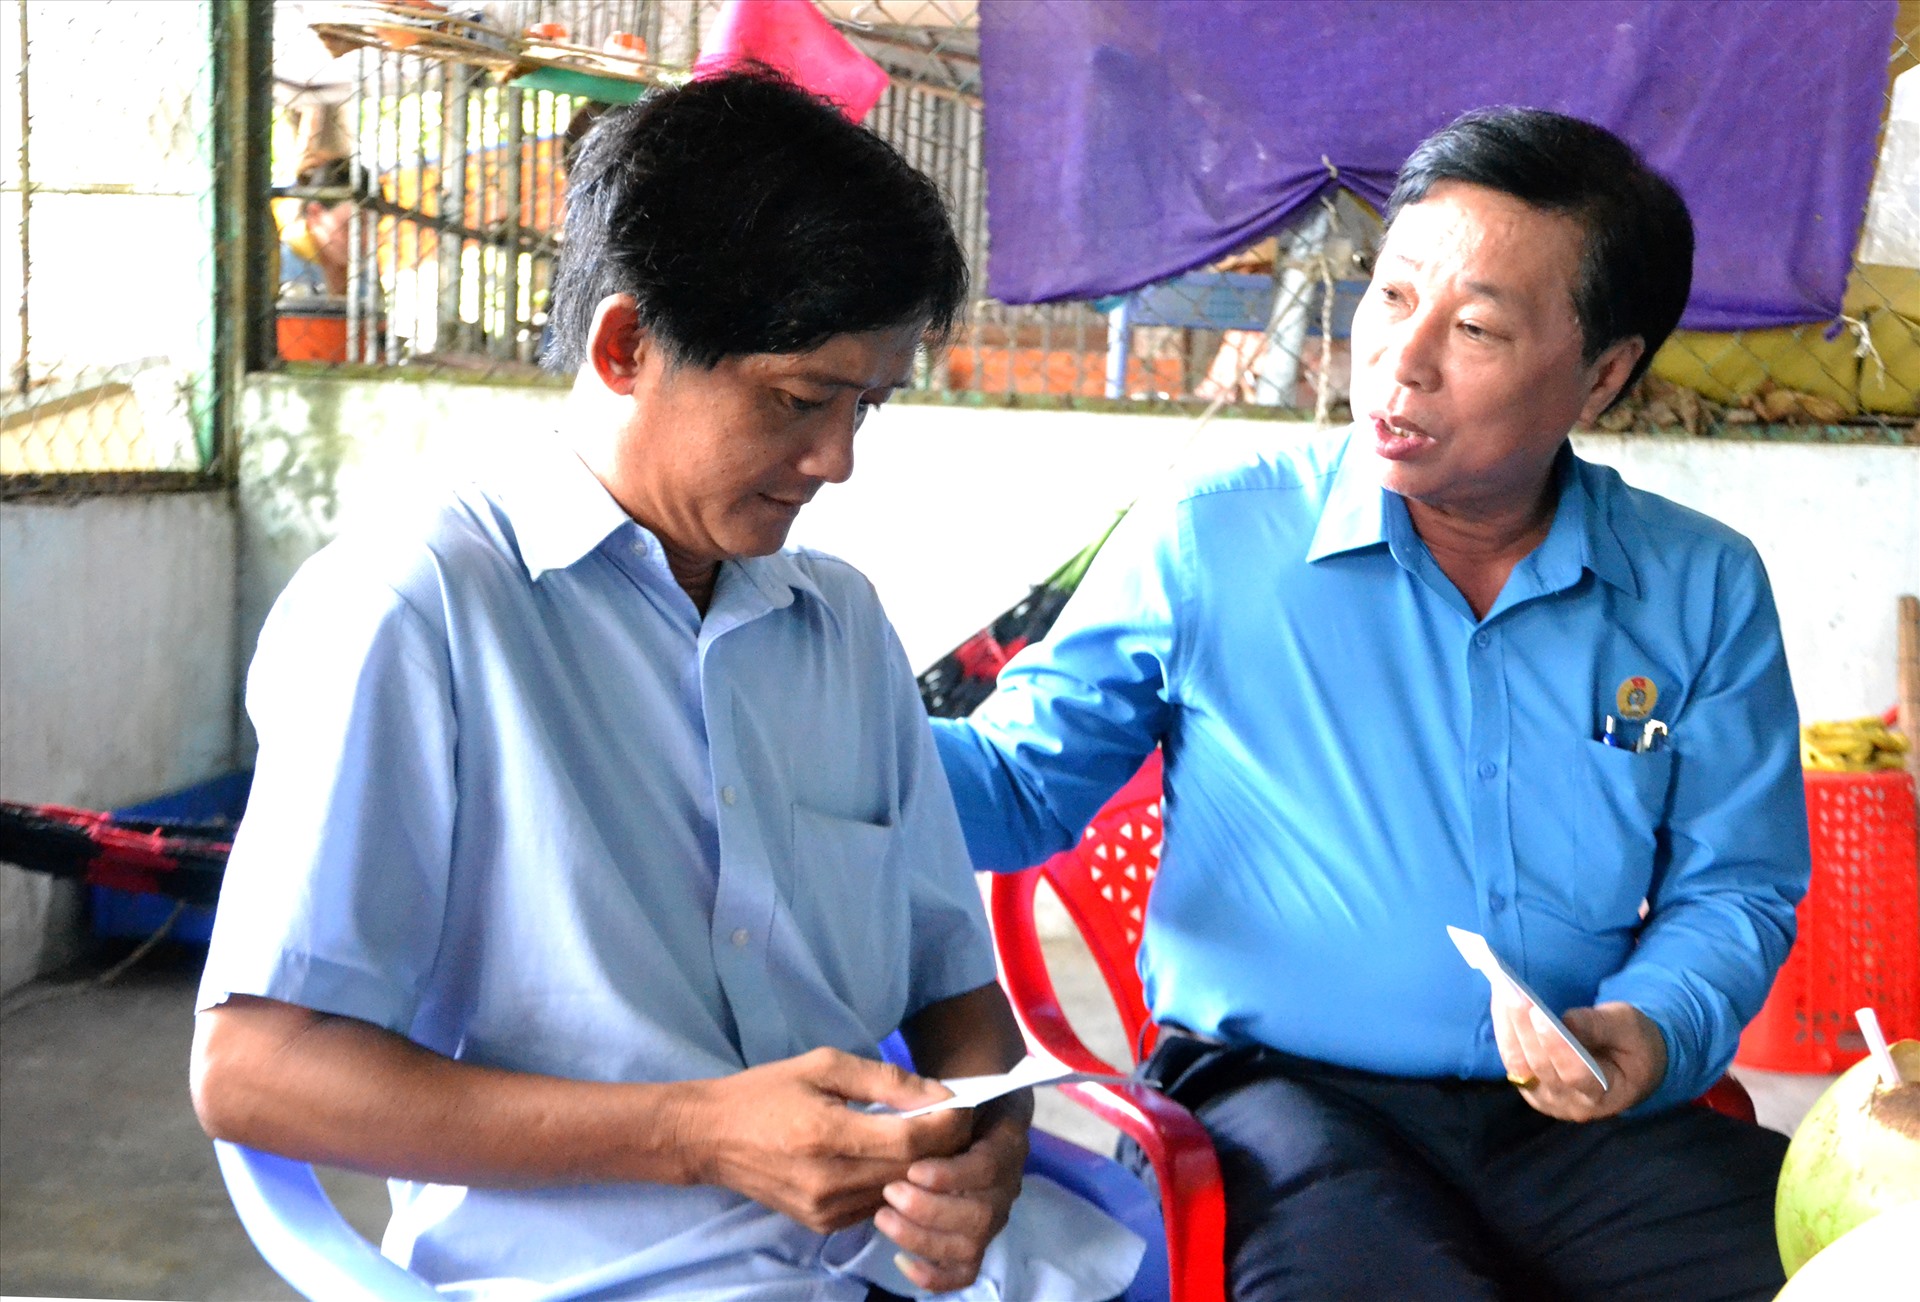 Ông Trần Thanh Việt ân cần thăm hỏi và trao hỗ trợ cho đoàn viên Võ Thành Ao bị tai nạn lao động, chấn thương sọ não. Ảnh: LT